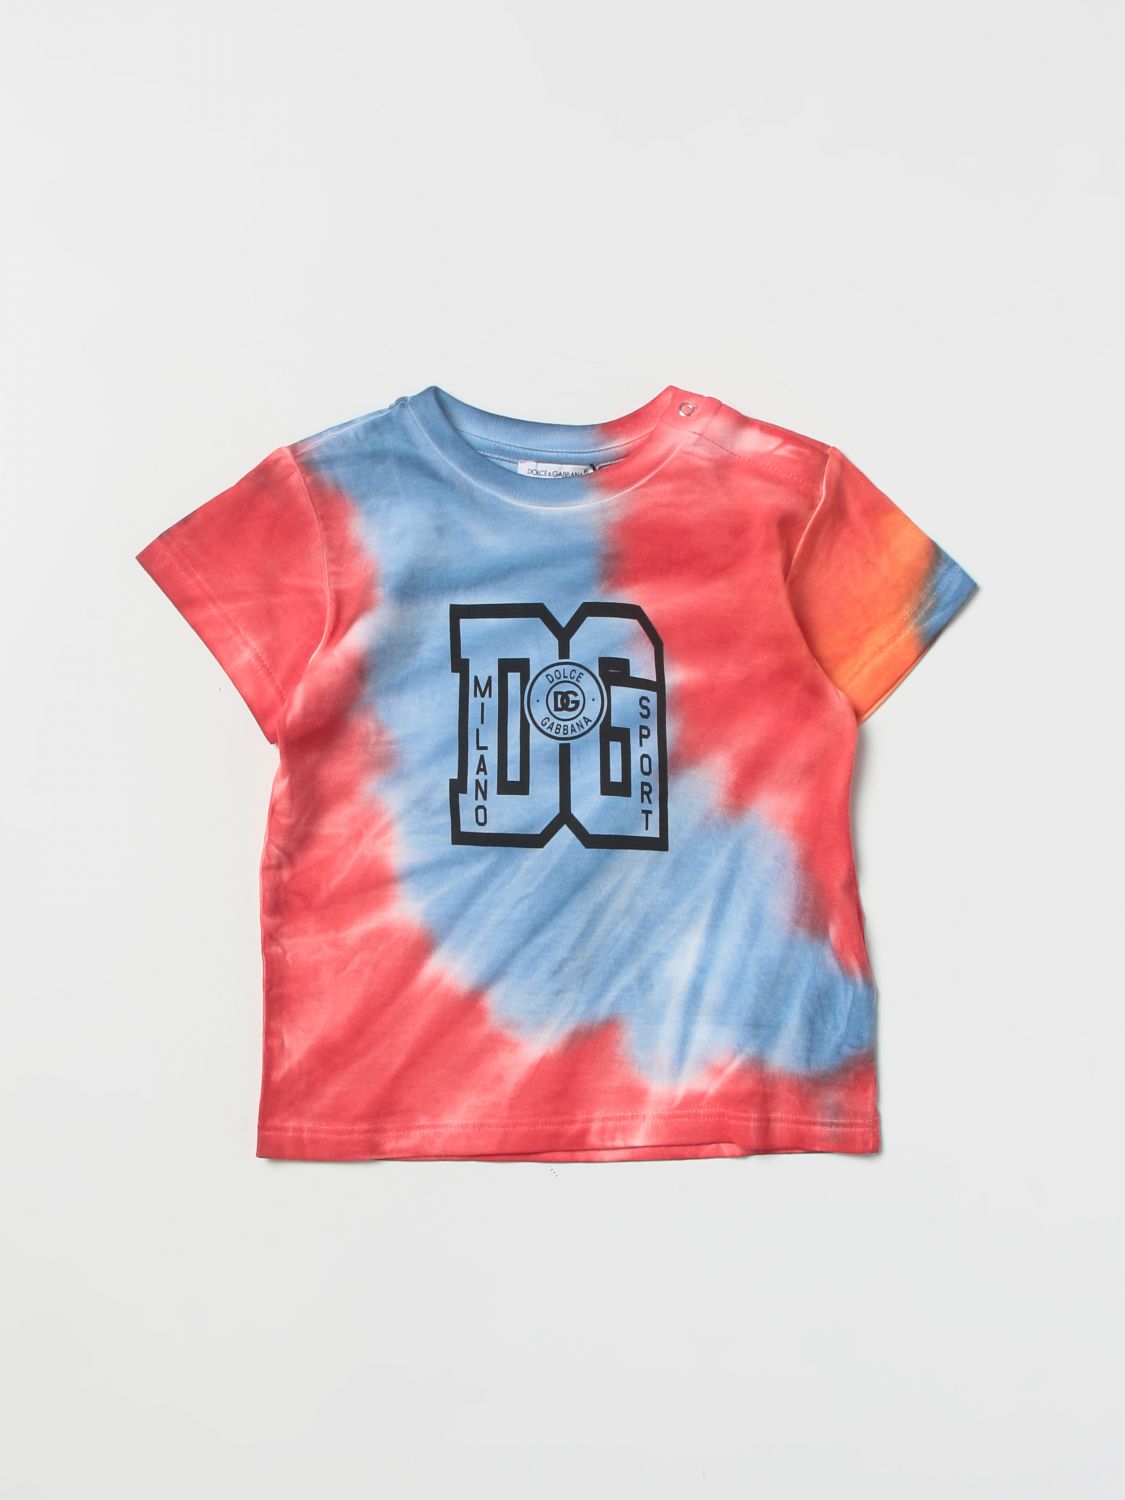 Camiseta Dolce & Gabbana: Camiseta Dolce & Gabbana para bebé fantasía 1